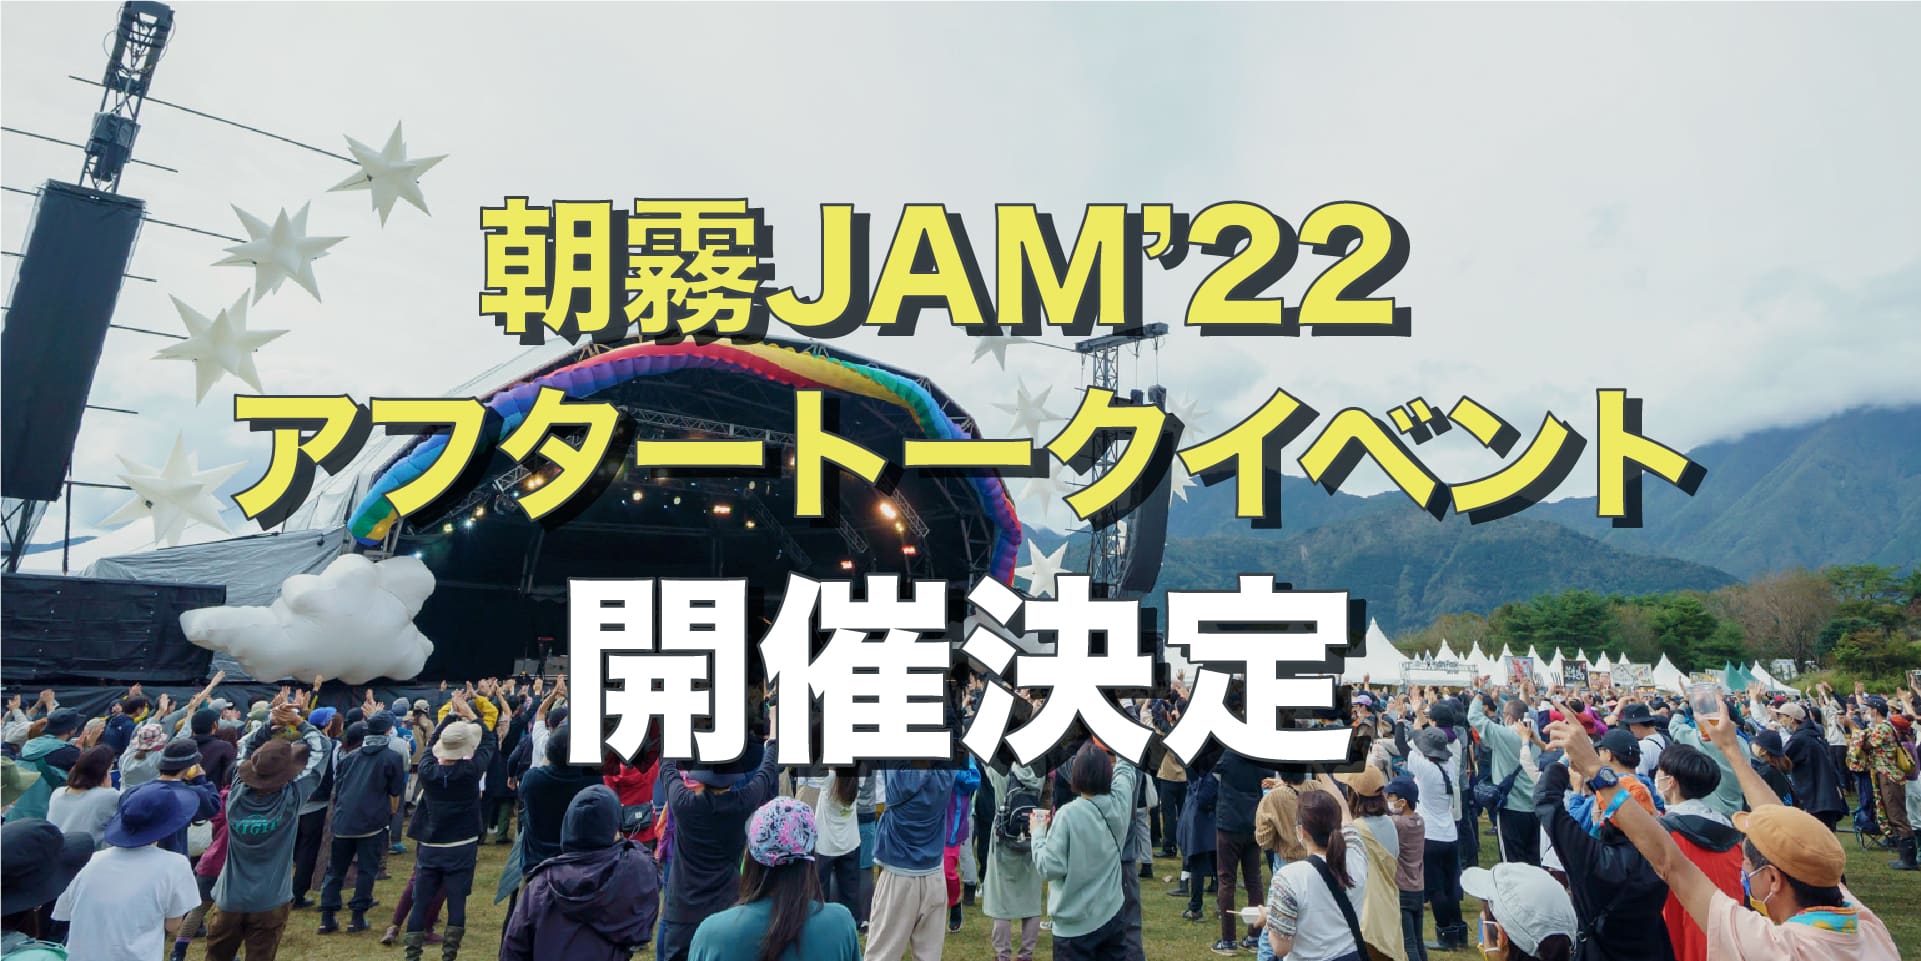 朝霧JAM'22 アフタートークイベント開催決定 イメージ